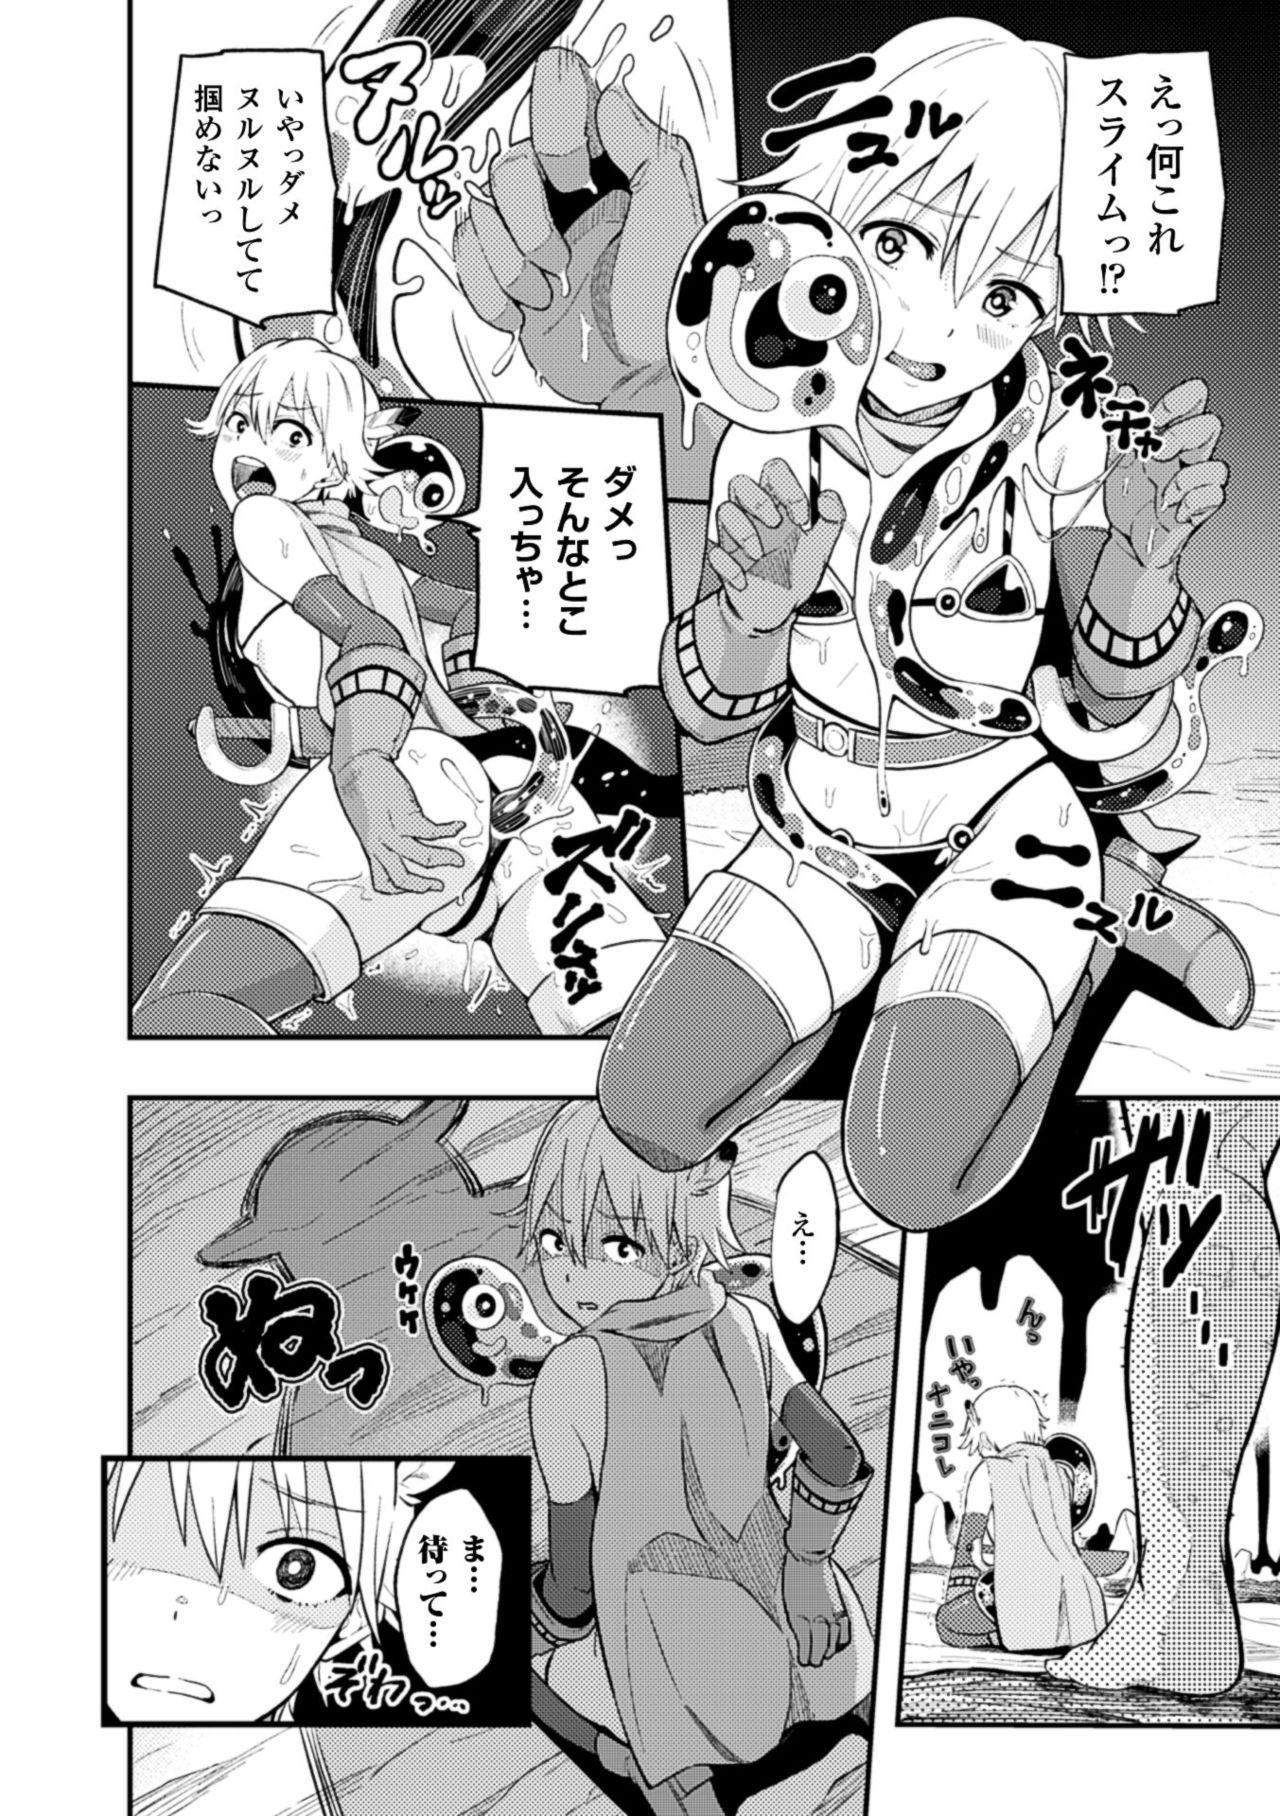 Footjob 2D Comic Magazine Kairaku Meikyuu Dungeon ni Kodama suru Mesu no Kyousei Vol. 2 Club - Page 8